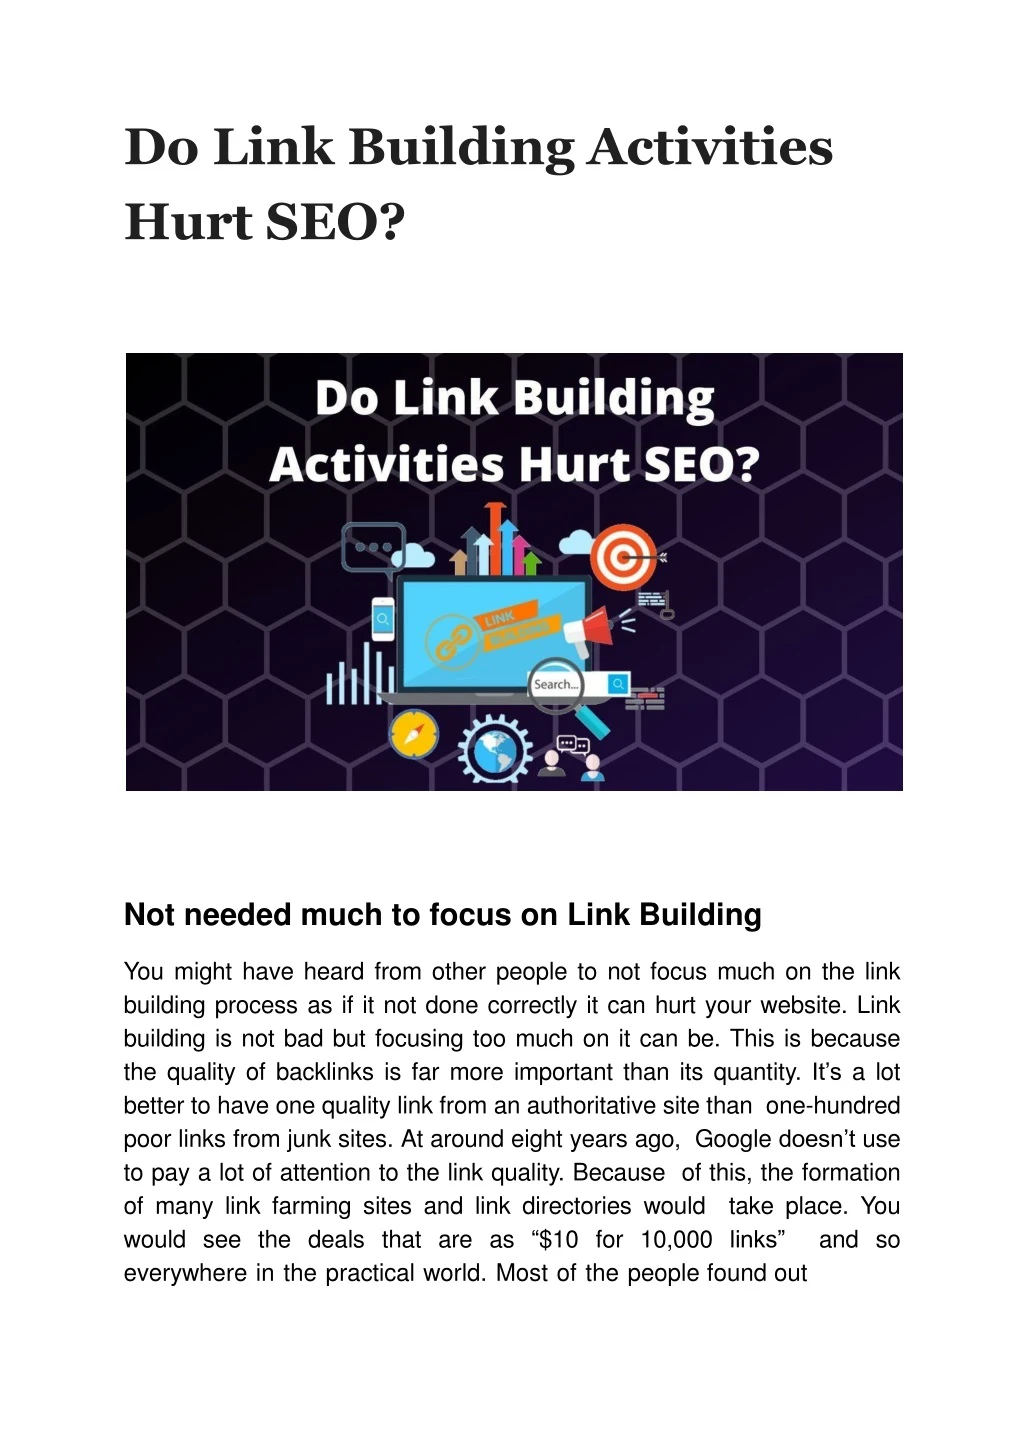 do link building activities hurt seo